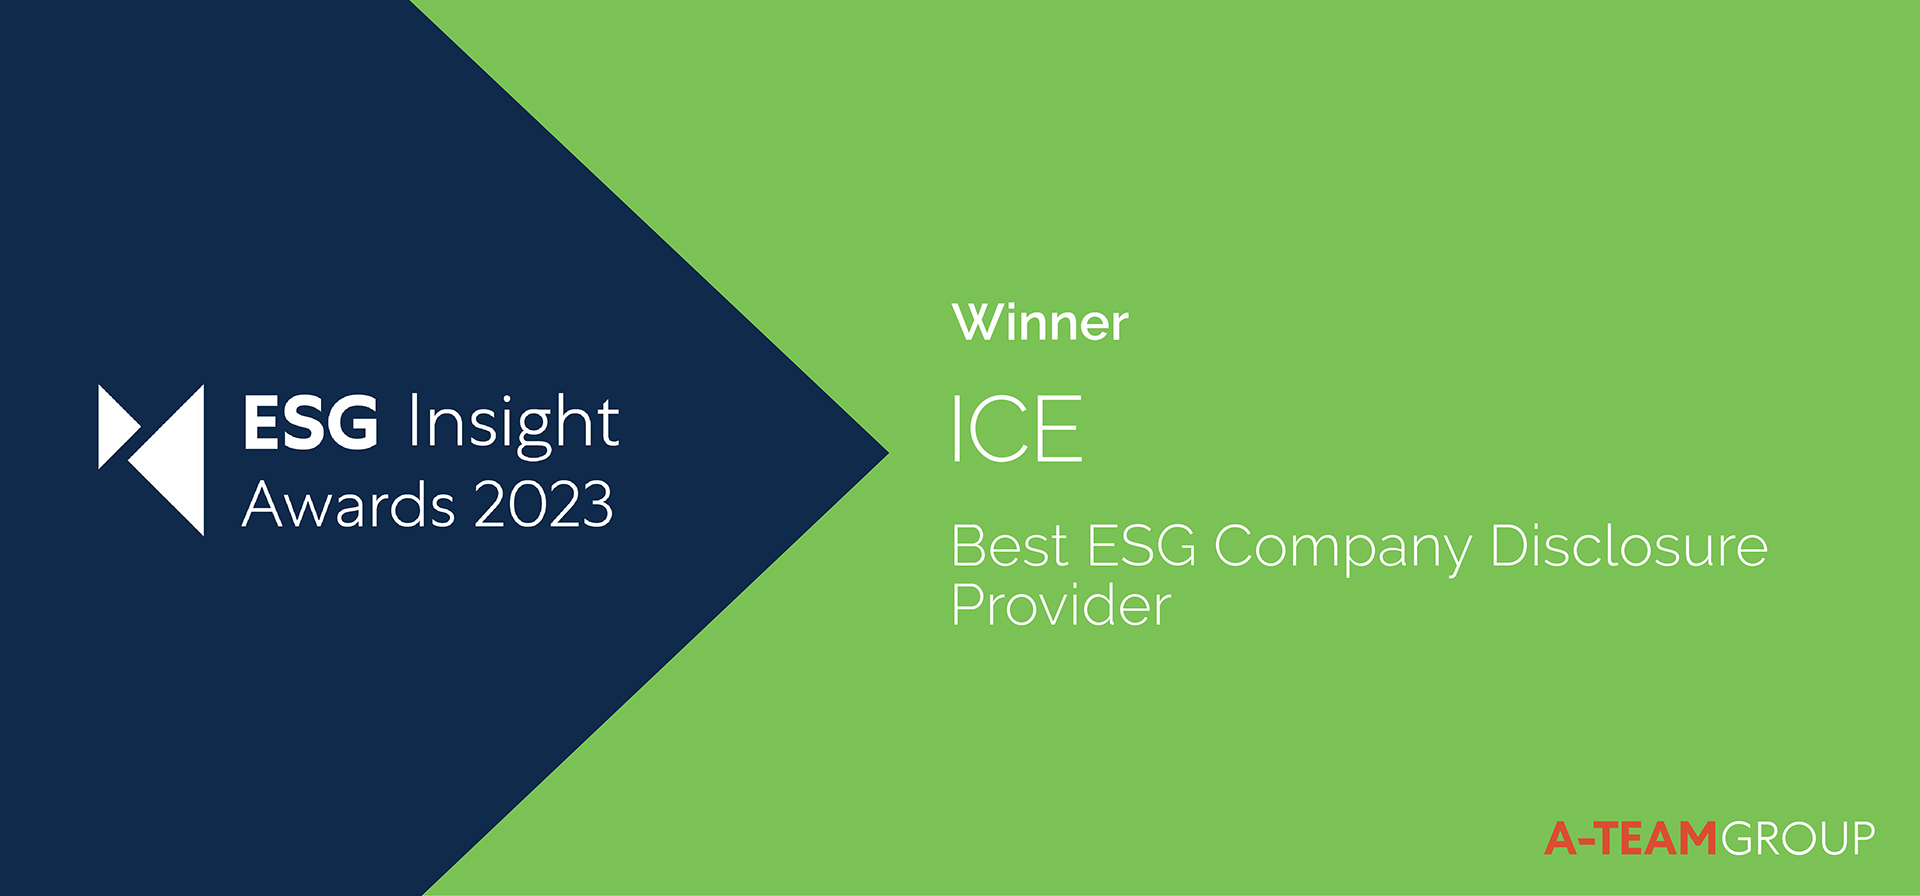 ESG Insights Awards 2023